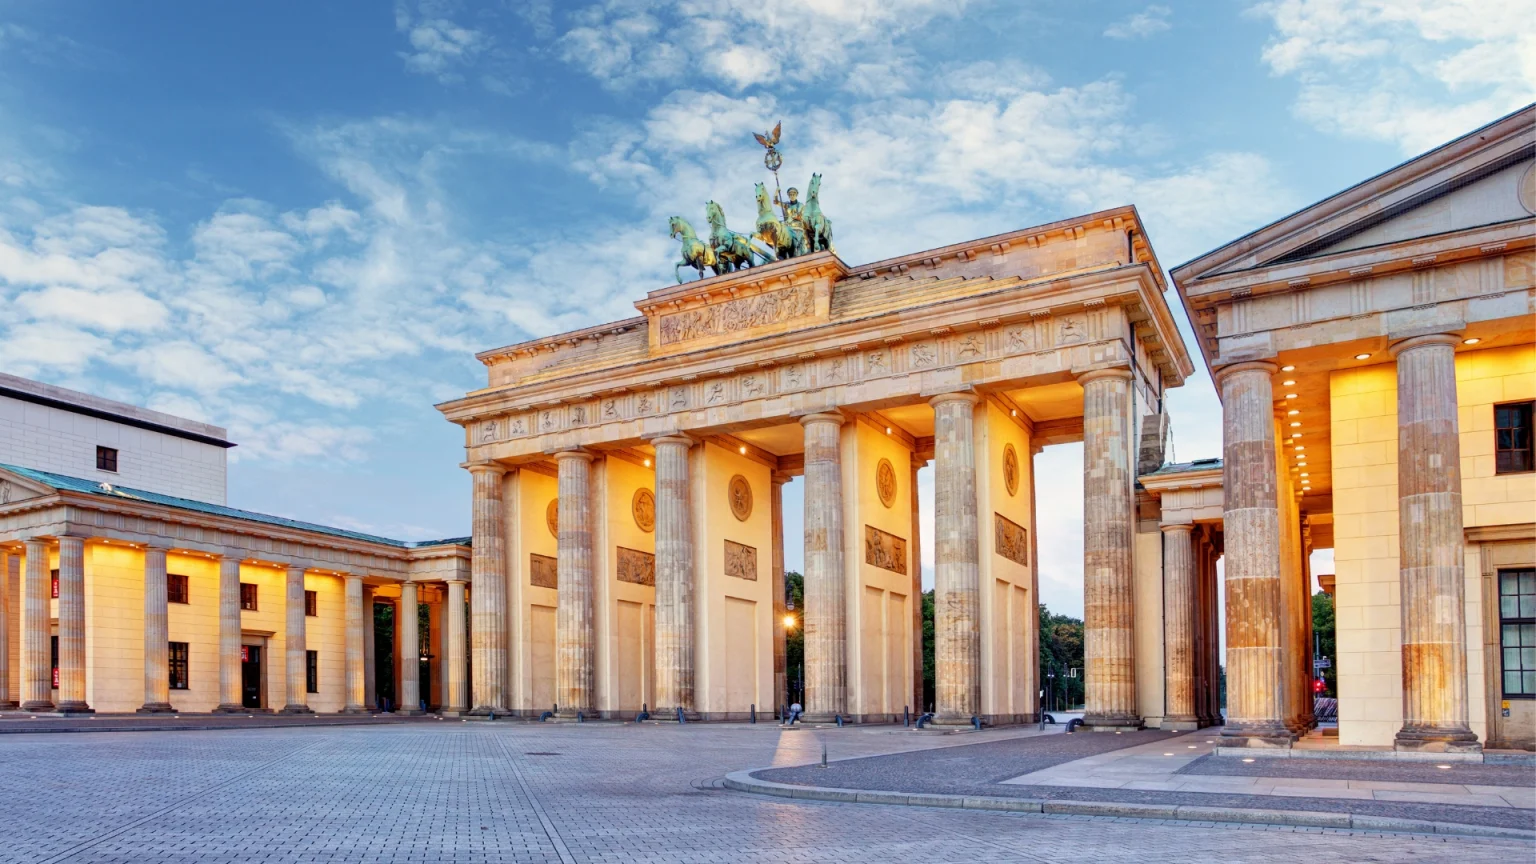 Cosa vedere a Berlino: la Porta di Brandeburgo